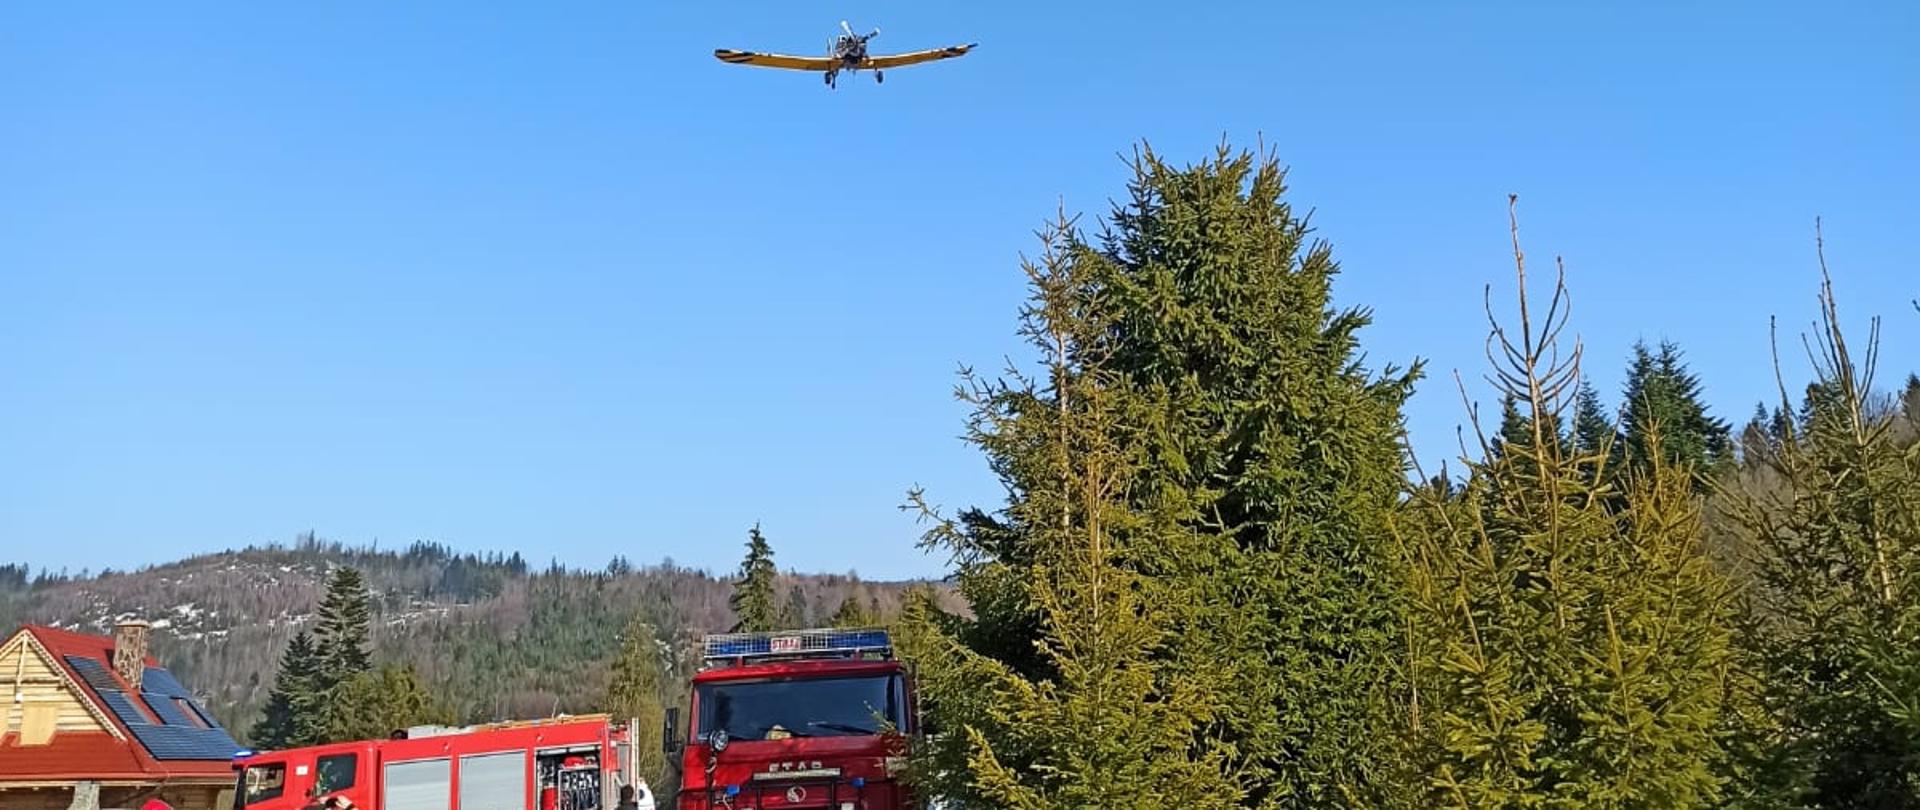 Samochody strażackie a nad nimi nisko przelatuje samolot Dromader przystosowany do gaszenia pożarów lasów